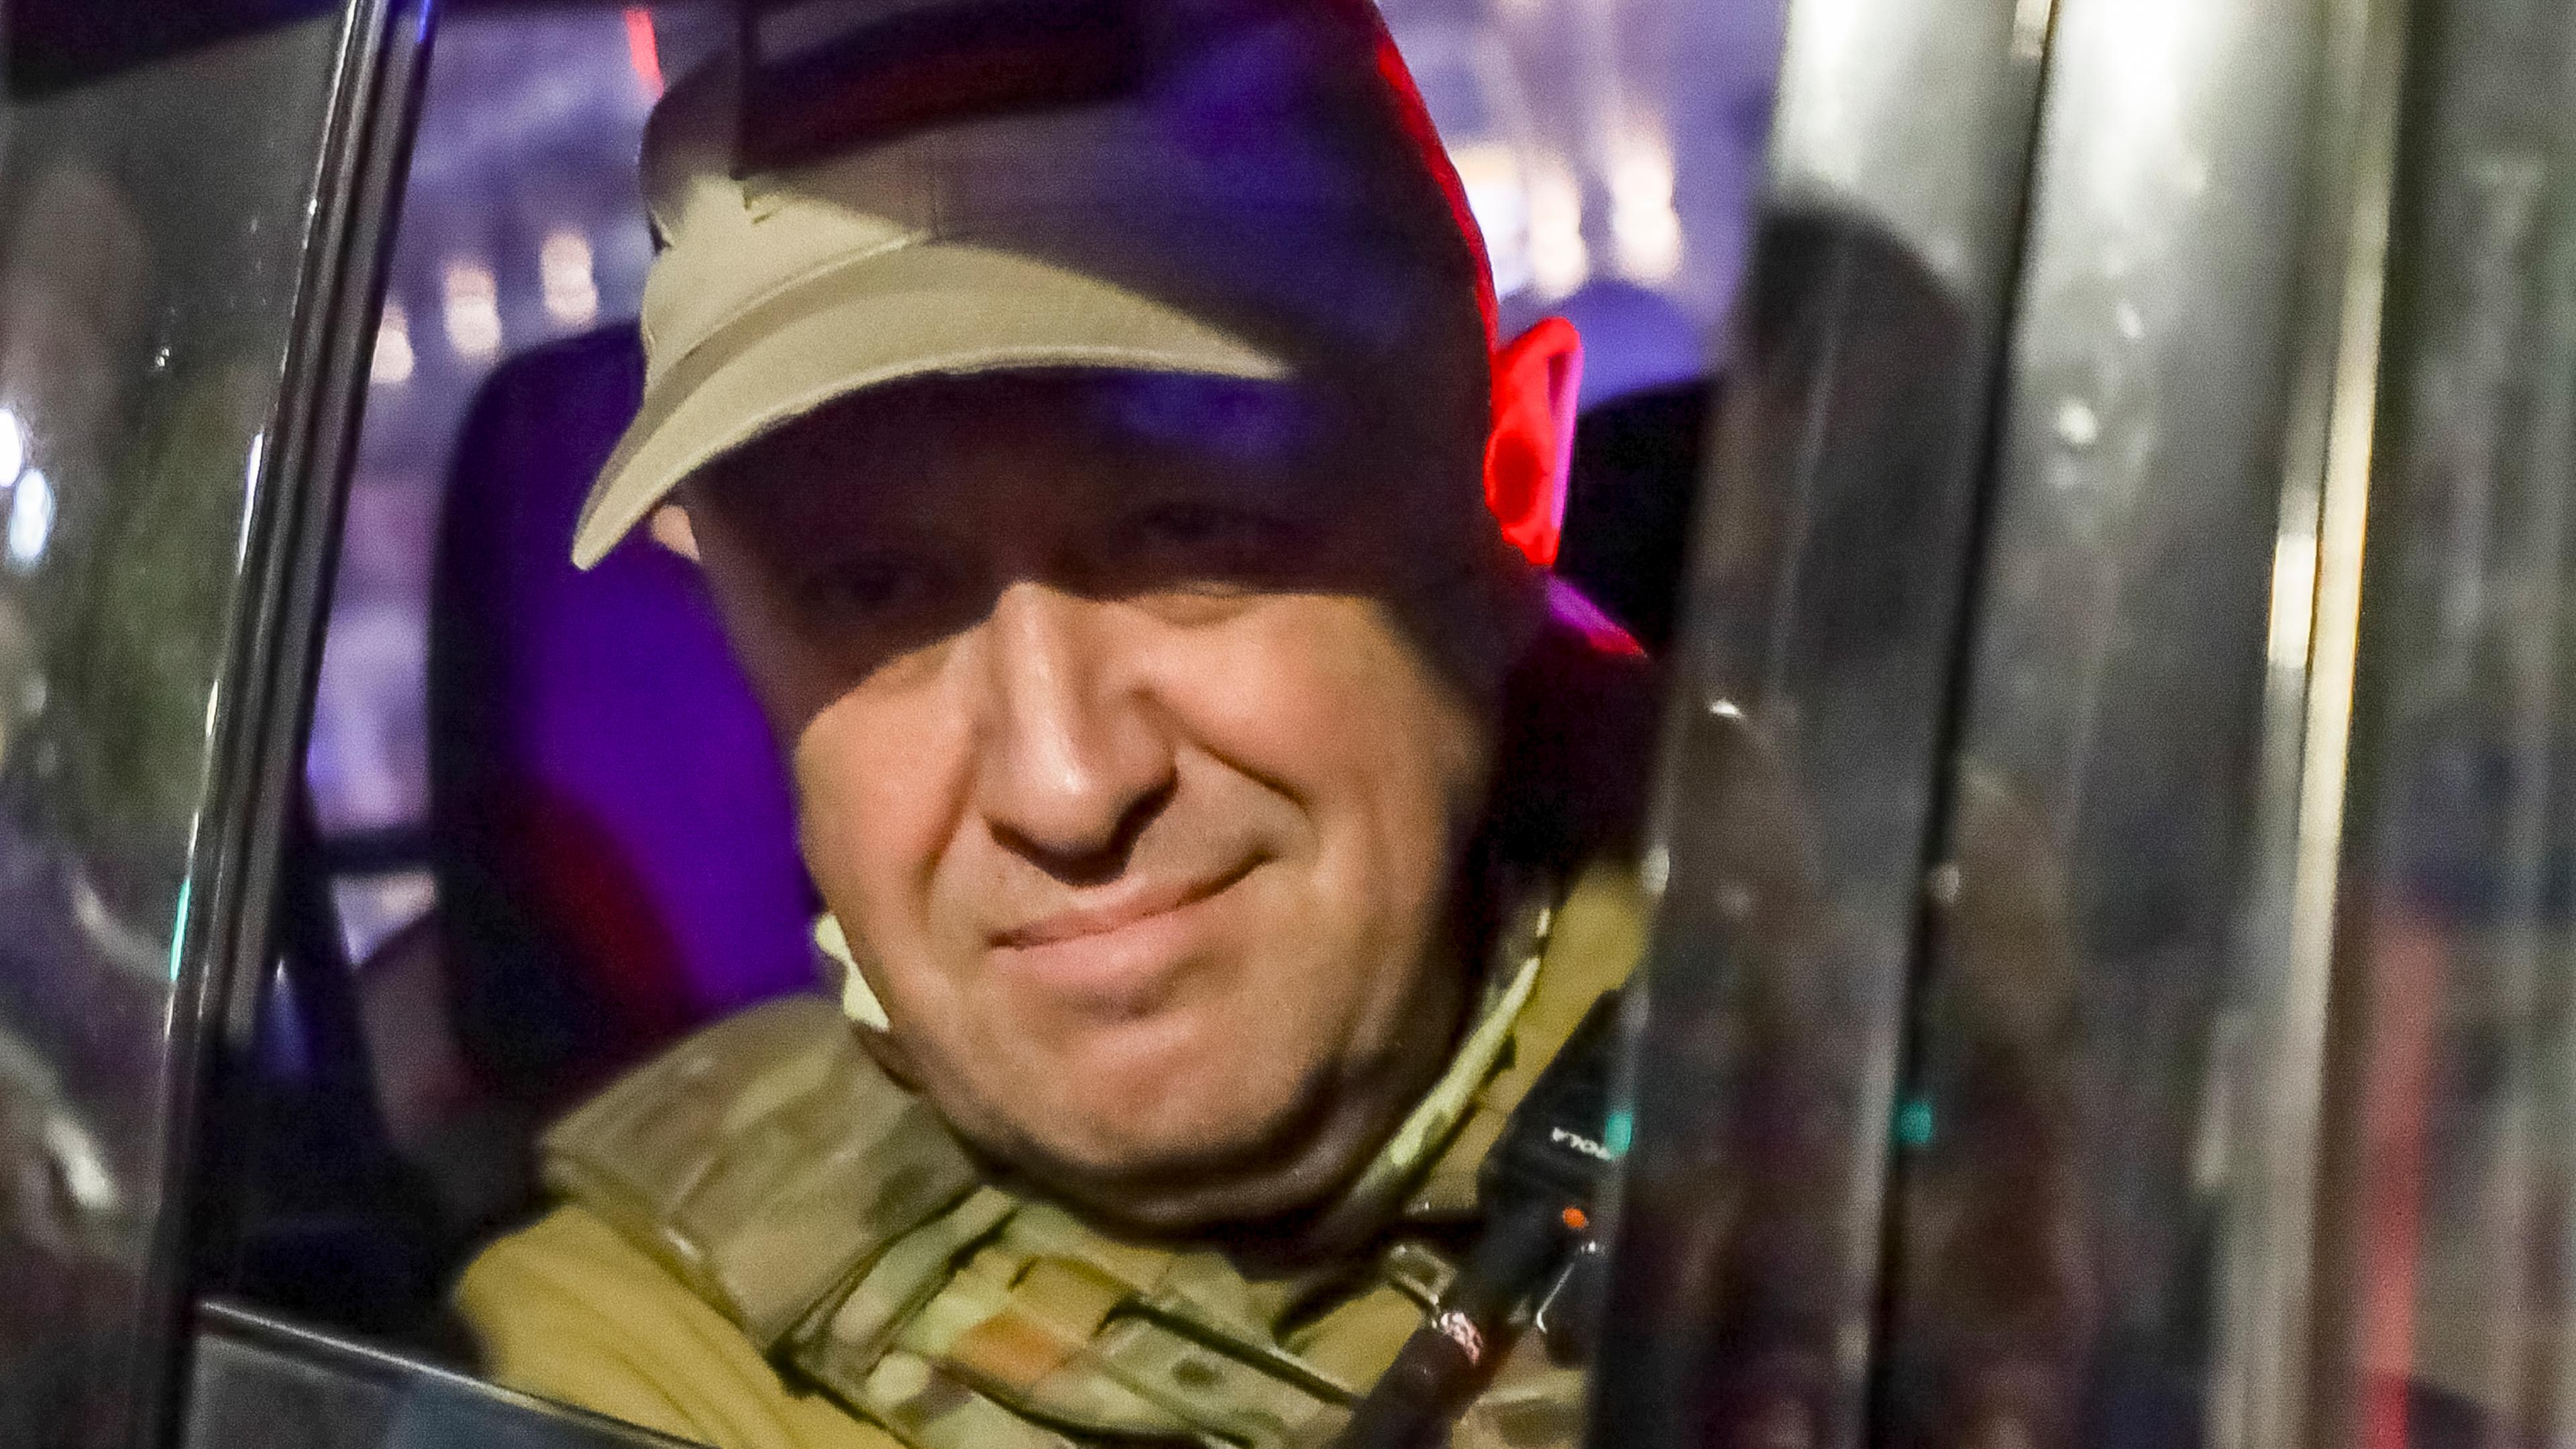 Russland, Rostow am Don: Jewgeni Prigoschin blickt aus einem Militärfahrzeug